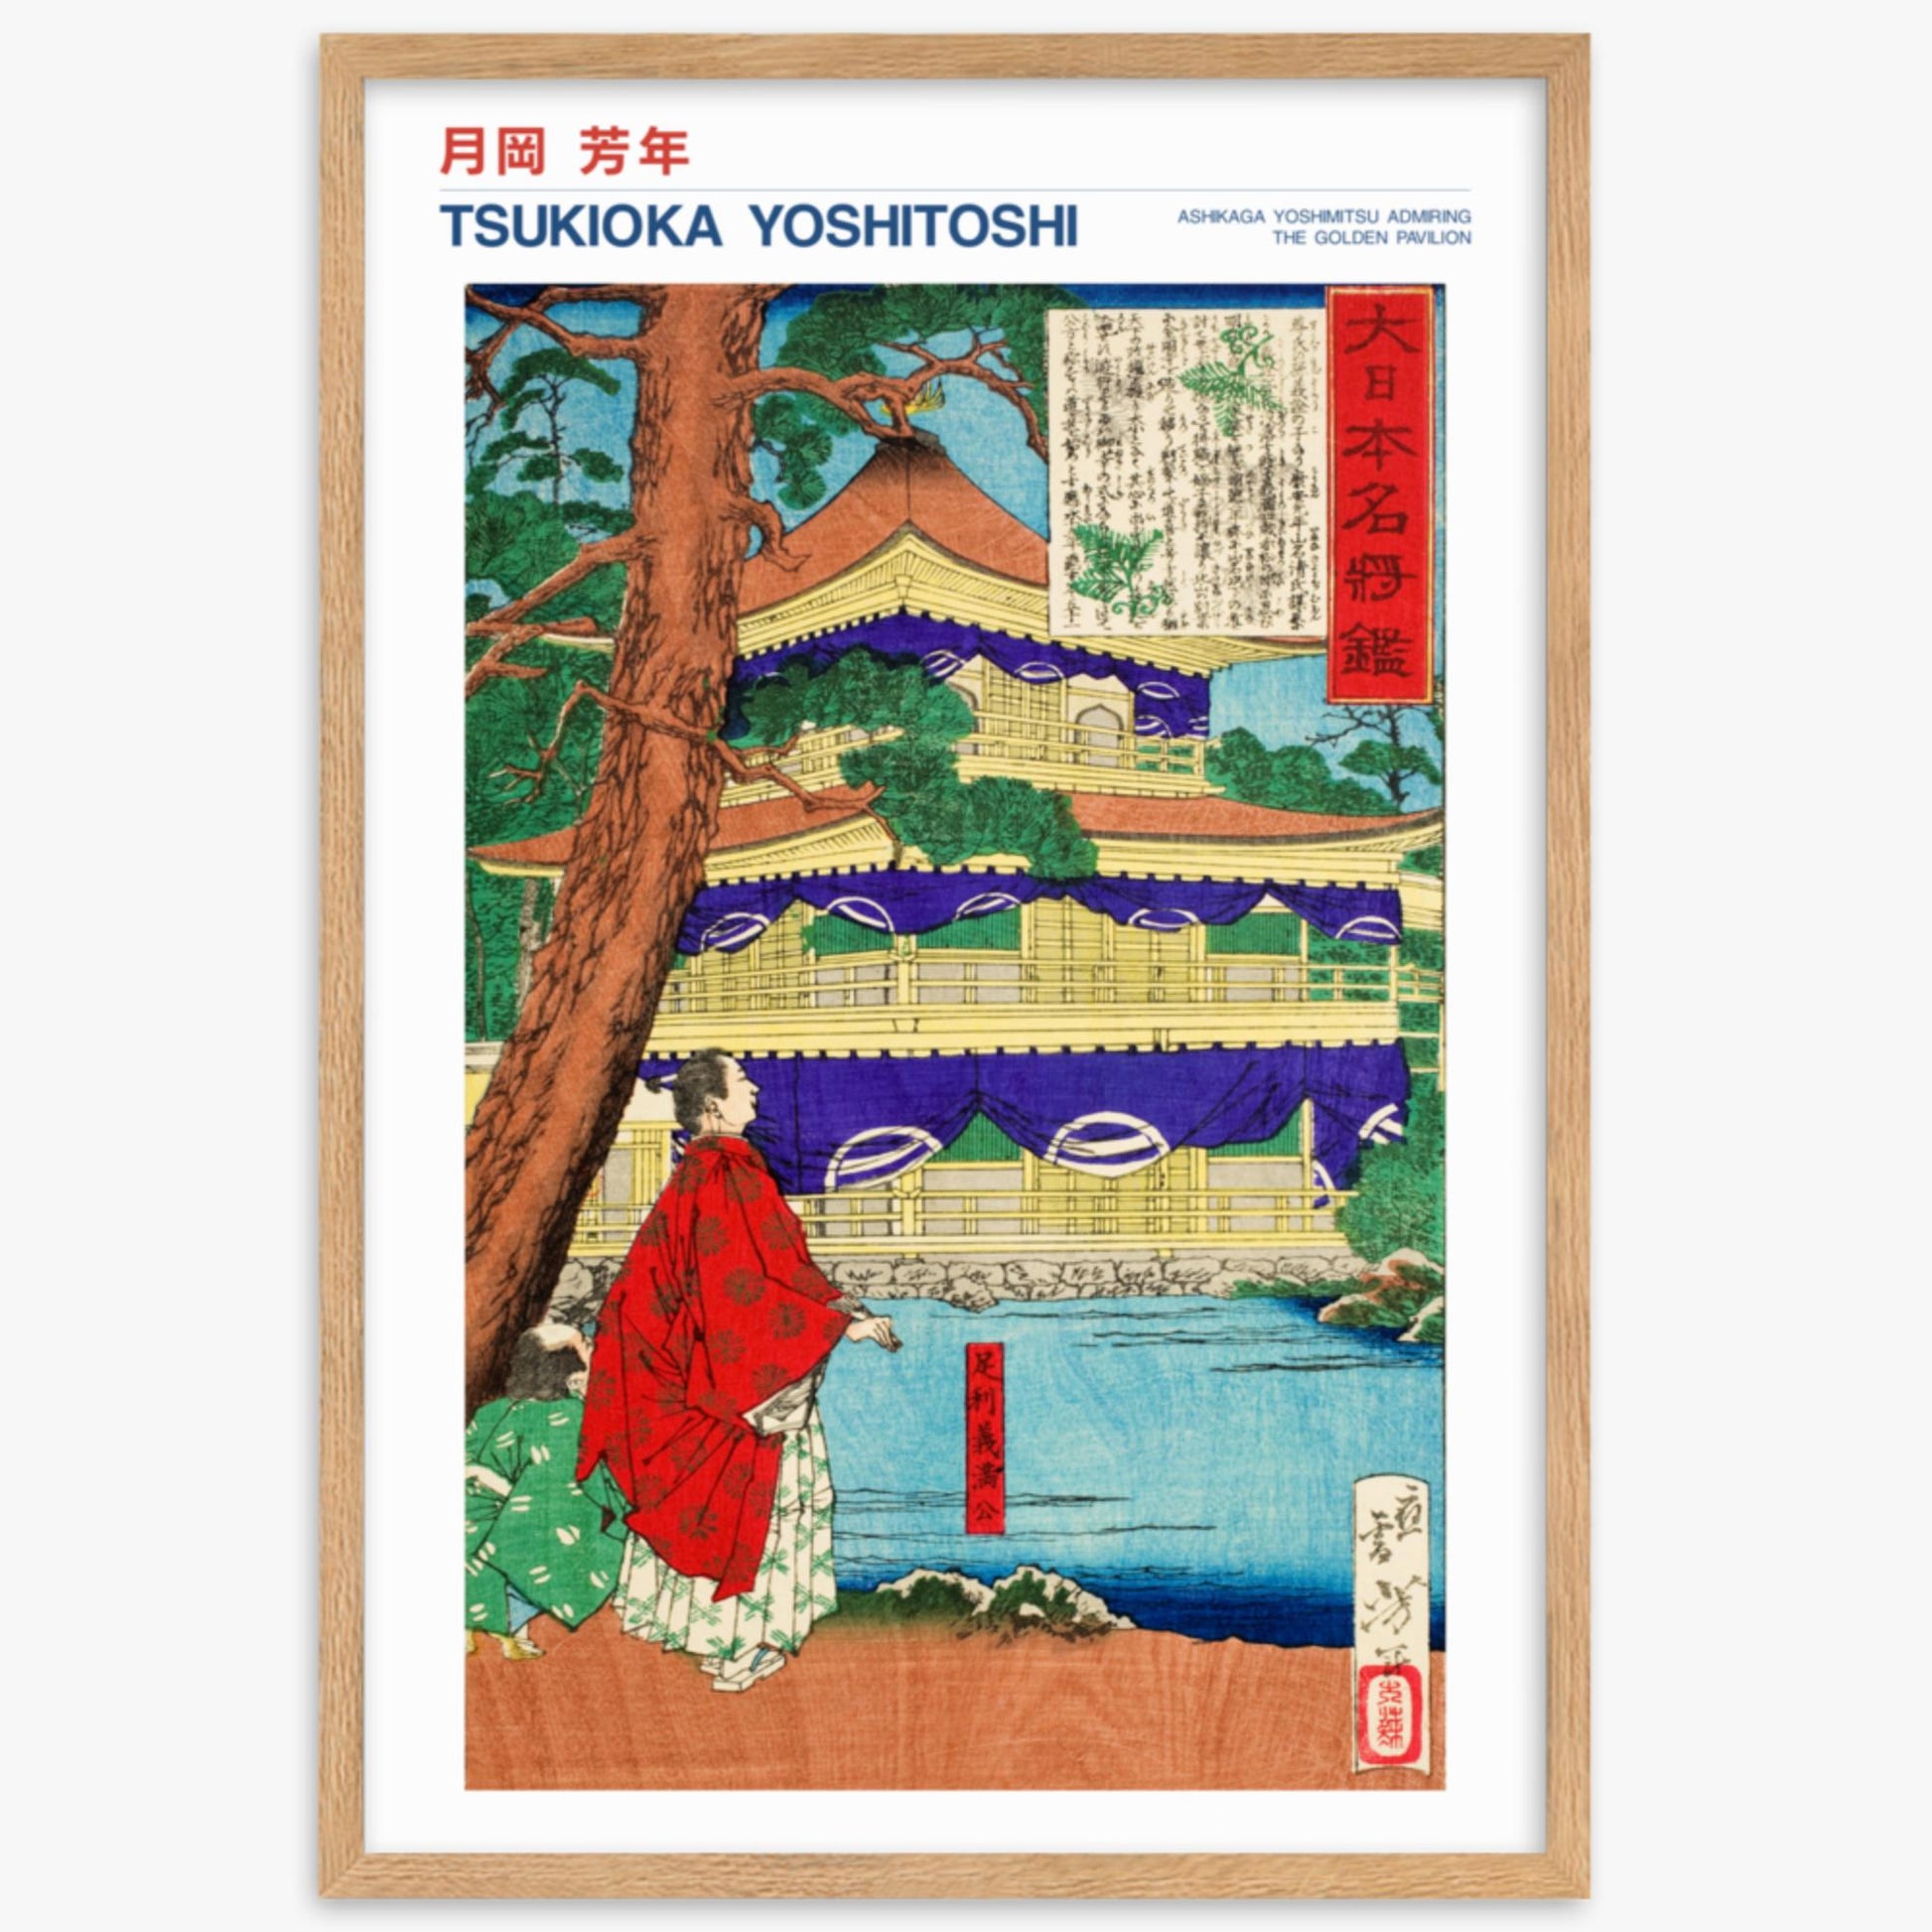 Tsukioka Yoshitoshi - Ashikaga Yoshimitsu admiring the Golden Pavilion - Decoration 61x91 cm Poster With Oak Frame